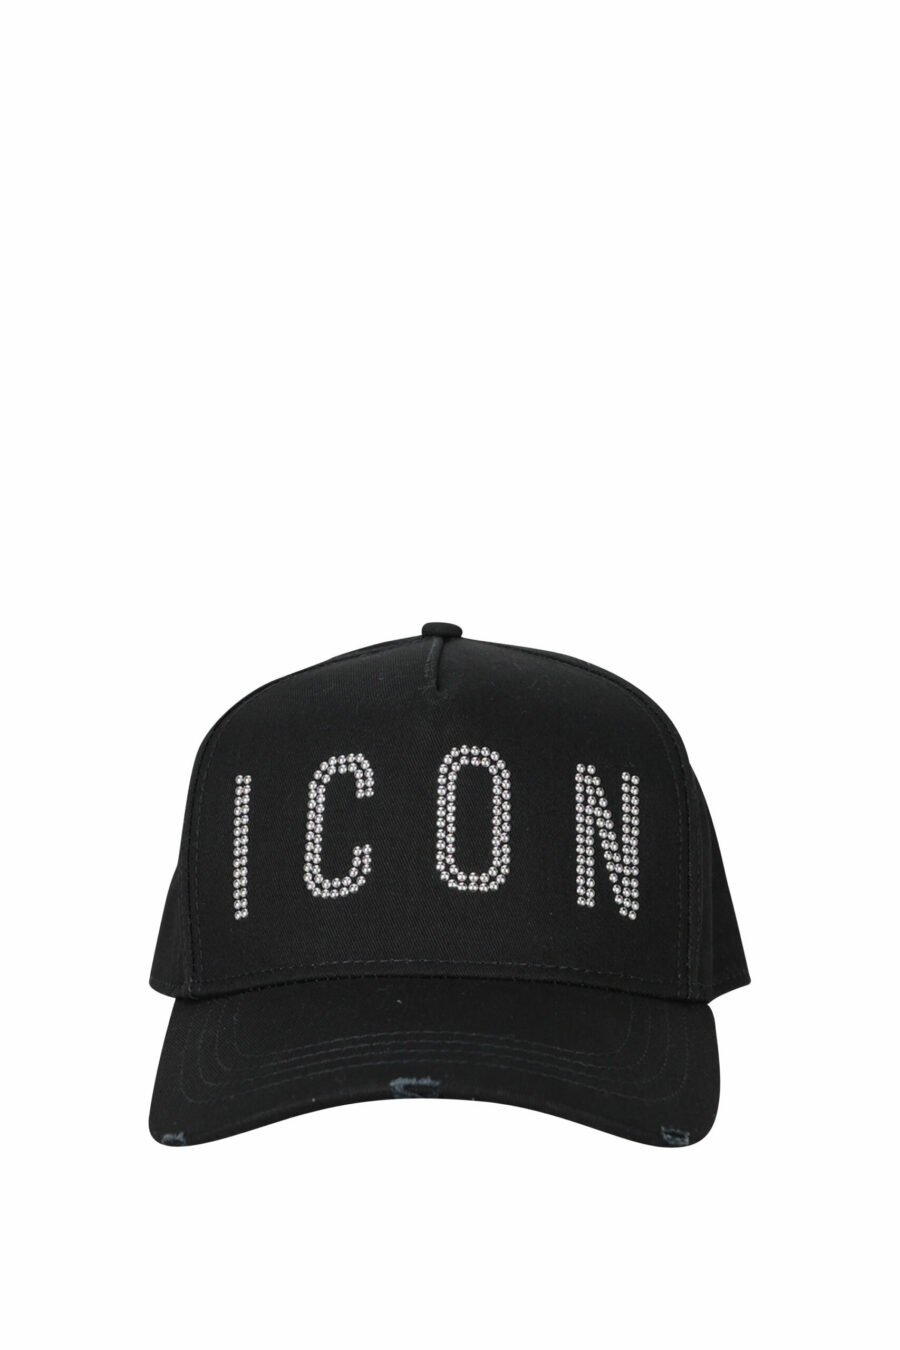 Gorra negra con logo "icon" - 8055777223000 scaled